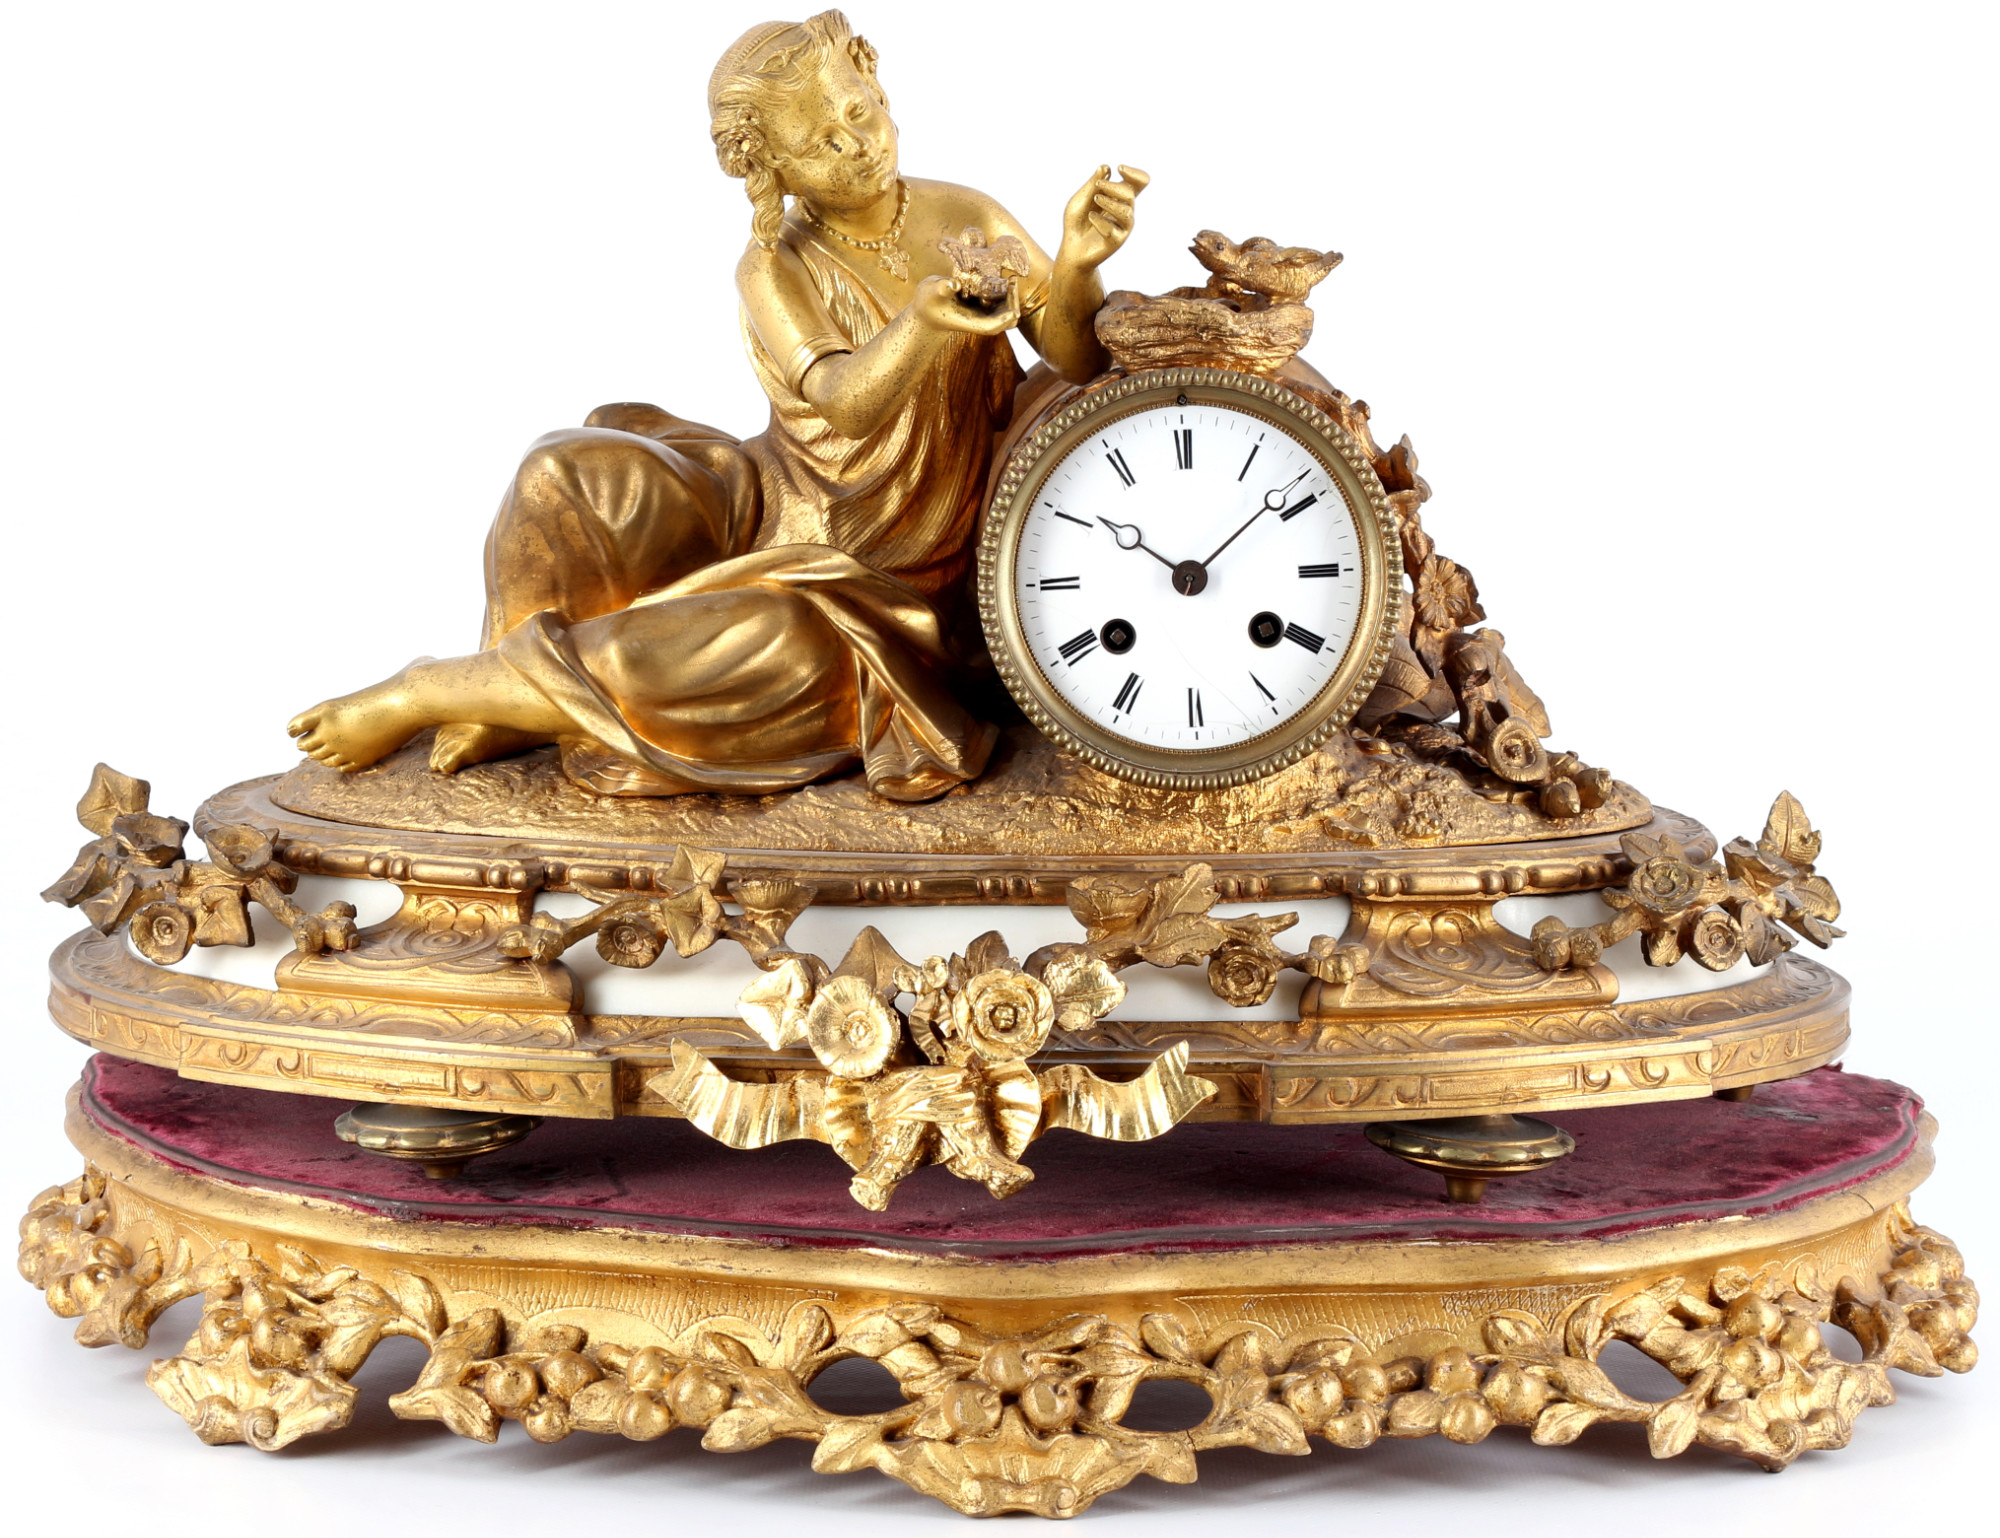 French bronze mantel clock 19th century, Kaminuhr Frankreich 19. Jahrhundert,